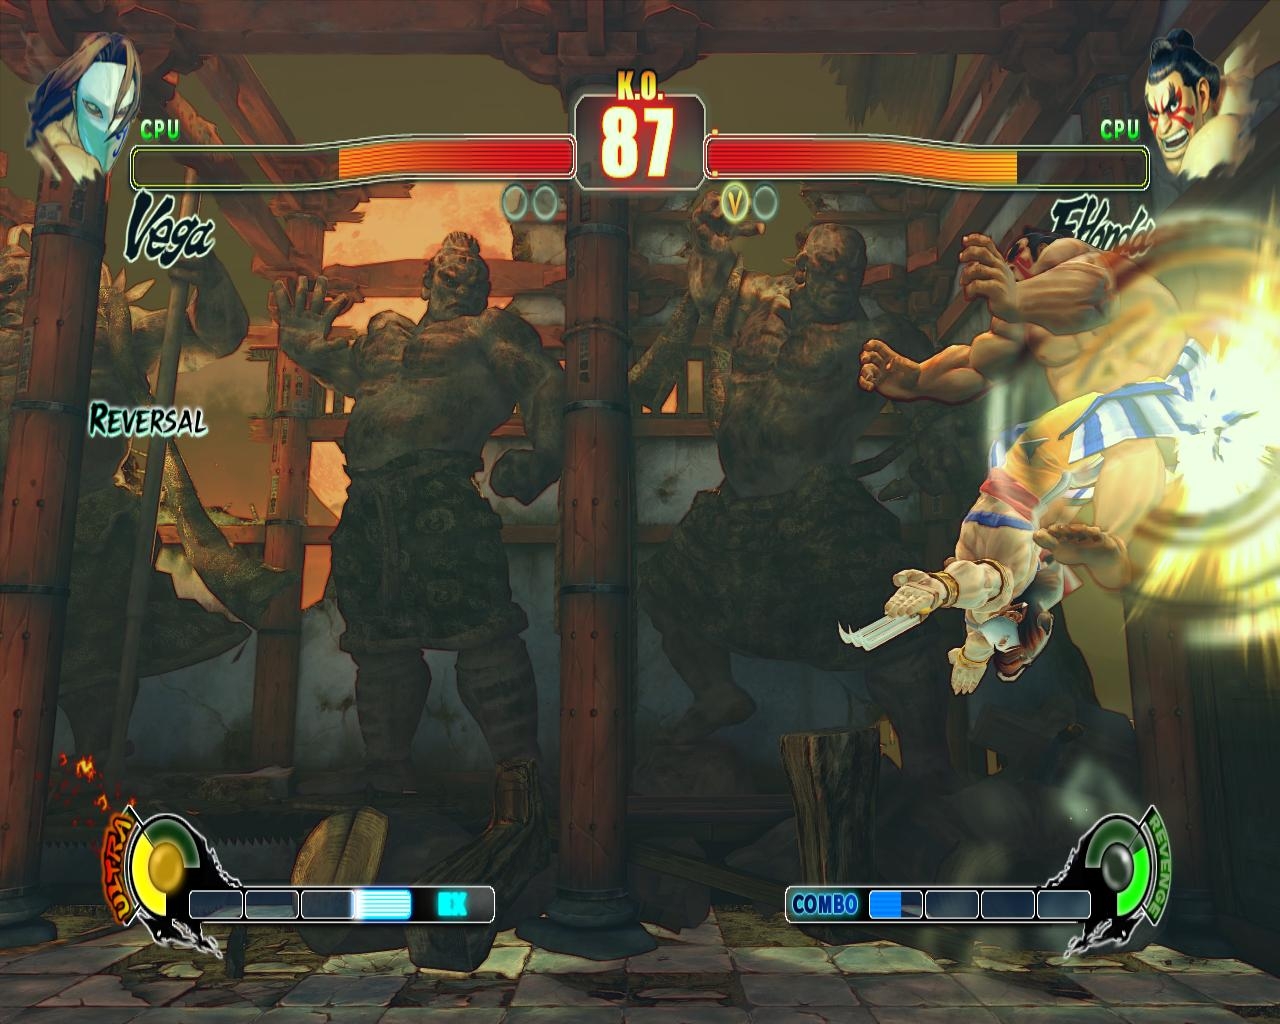 Скриншот из игры Street Fighter 4 под номером 87